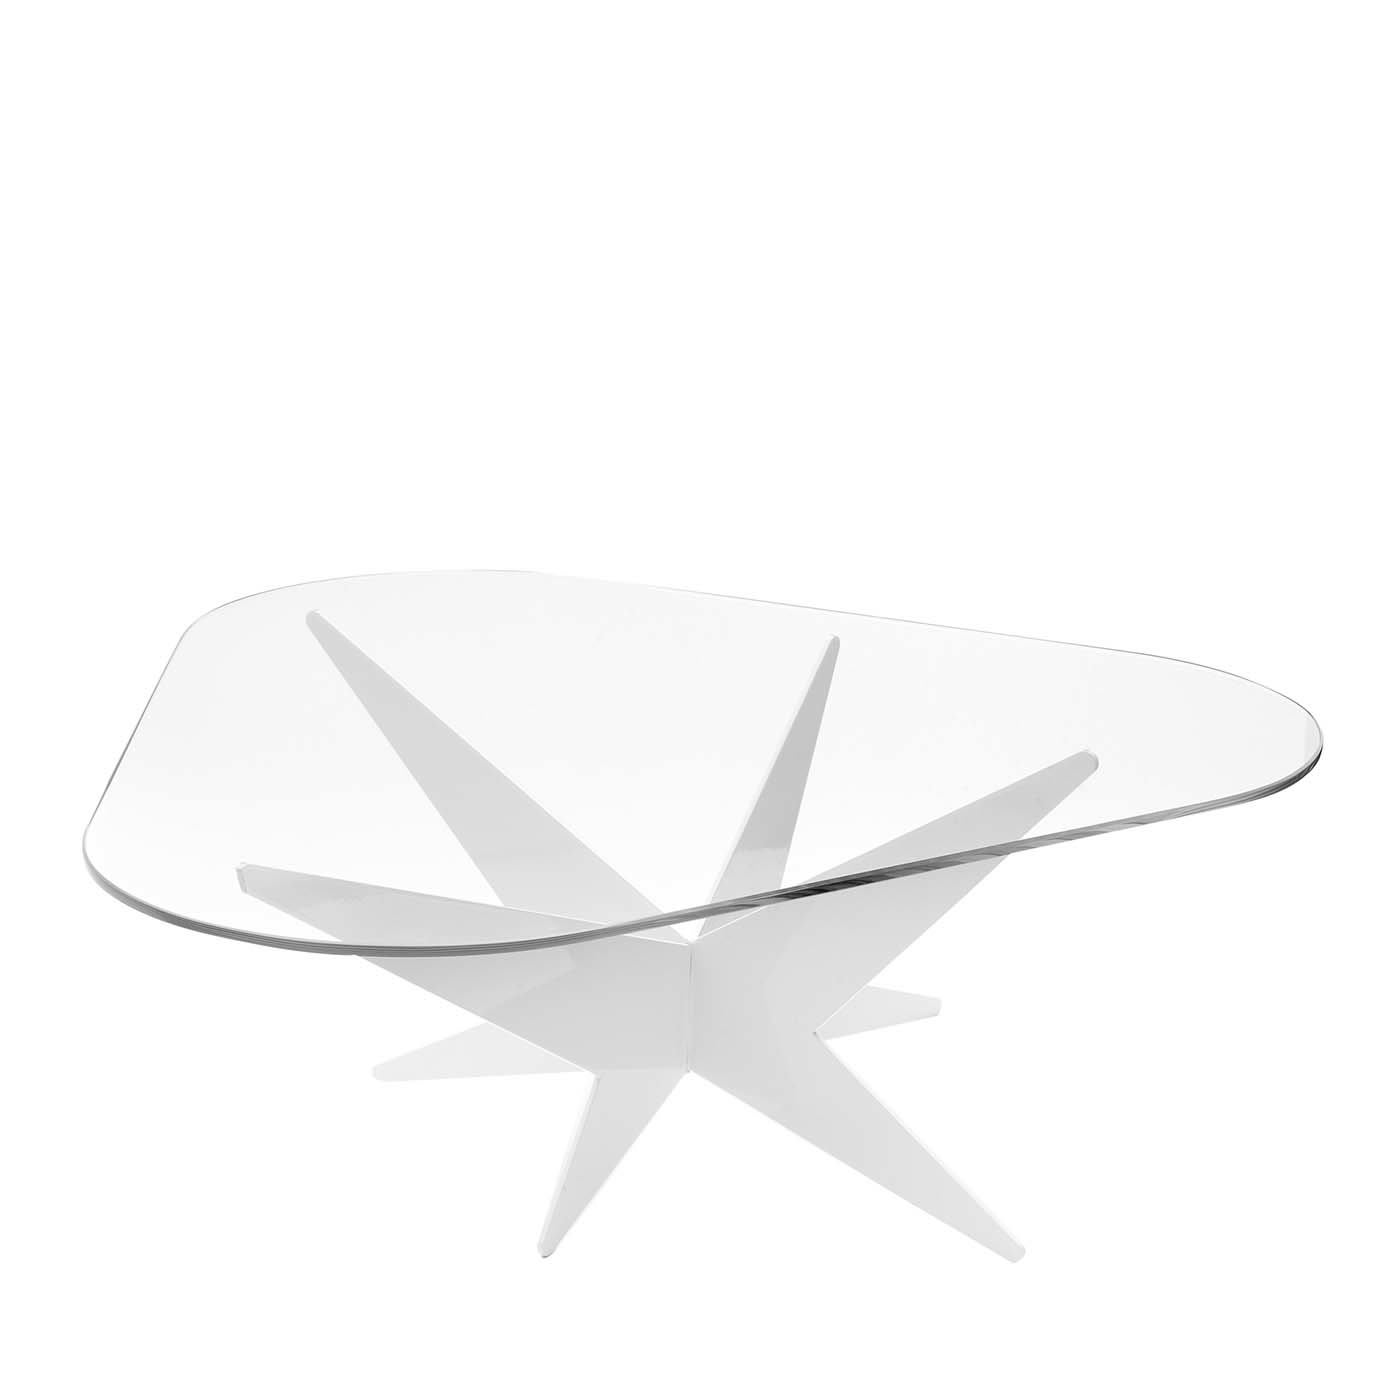 Star Triangular Coffee Table by Antonio Pio Saracino - Lamberti Design